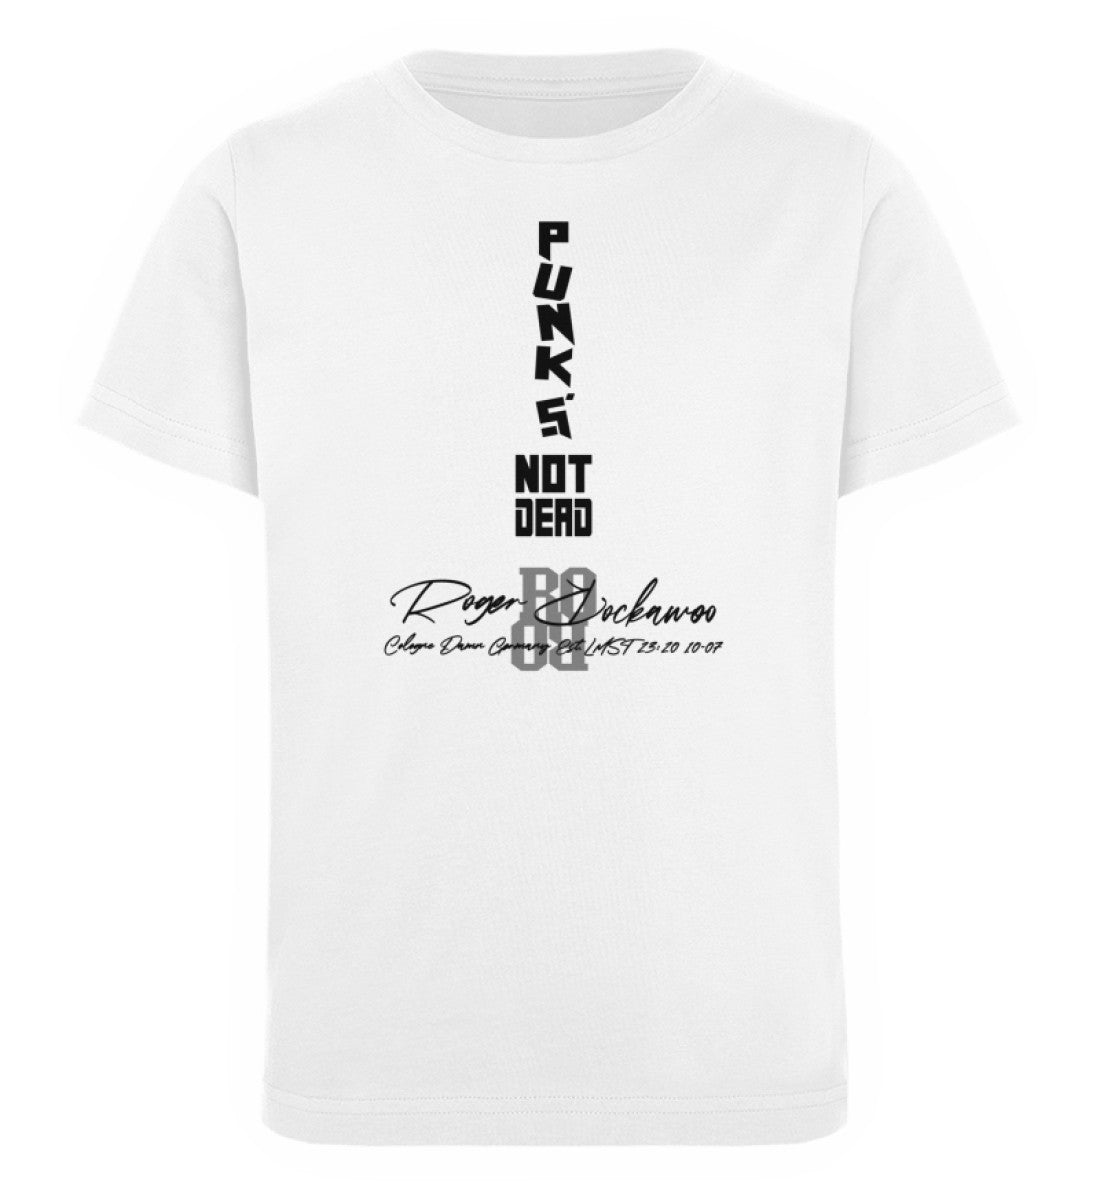 T-Shirt Kinder Mädchen und Jungen bedruckt mit dem Design der Punks not dead Collection im Roger Rockawoo Clothing Webshop Farbe Weiss 